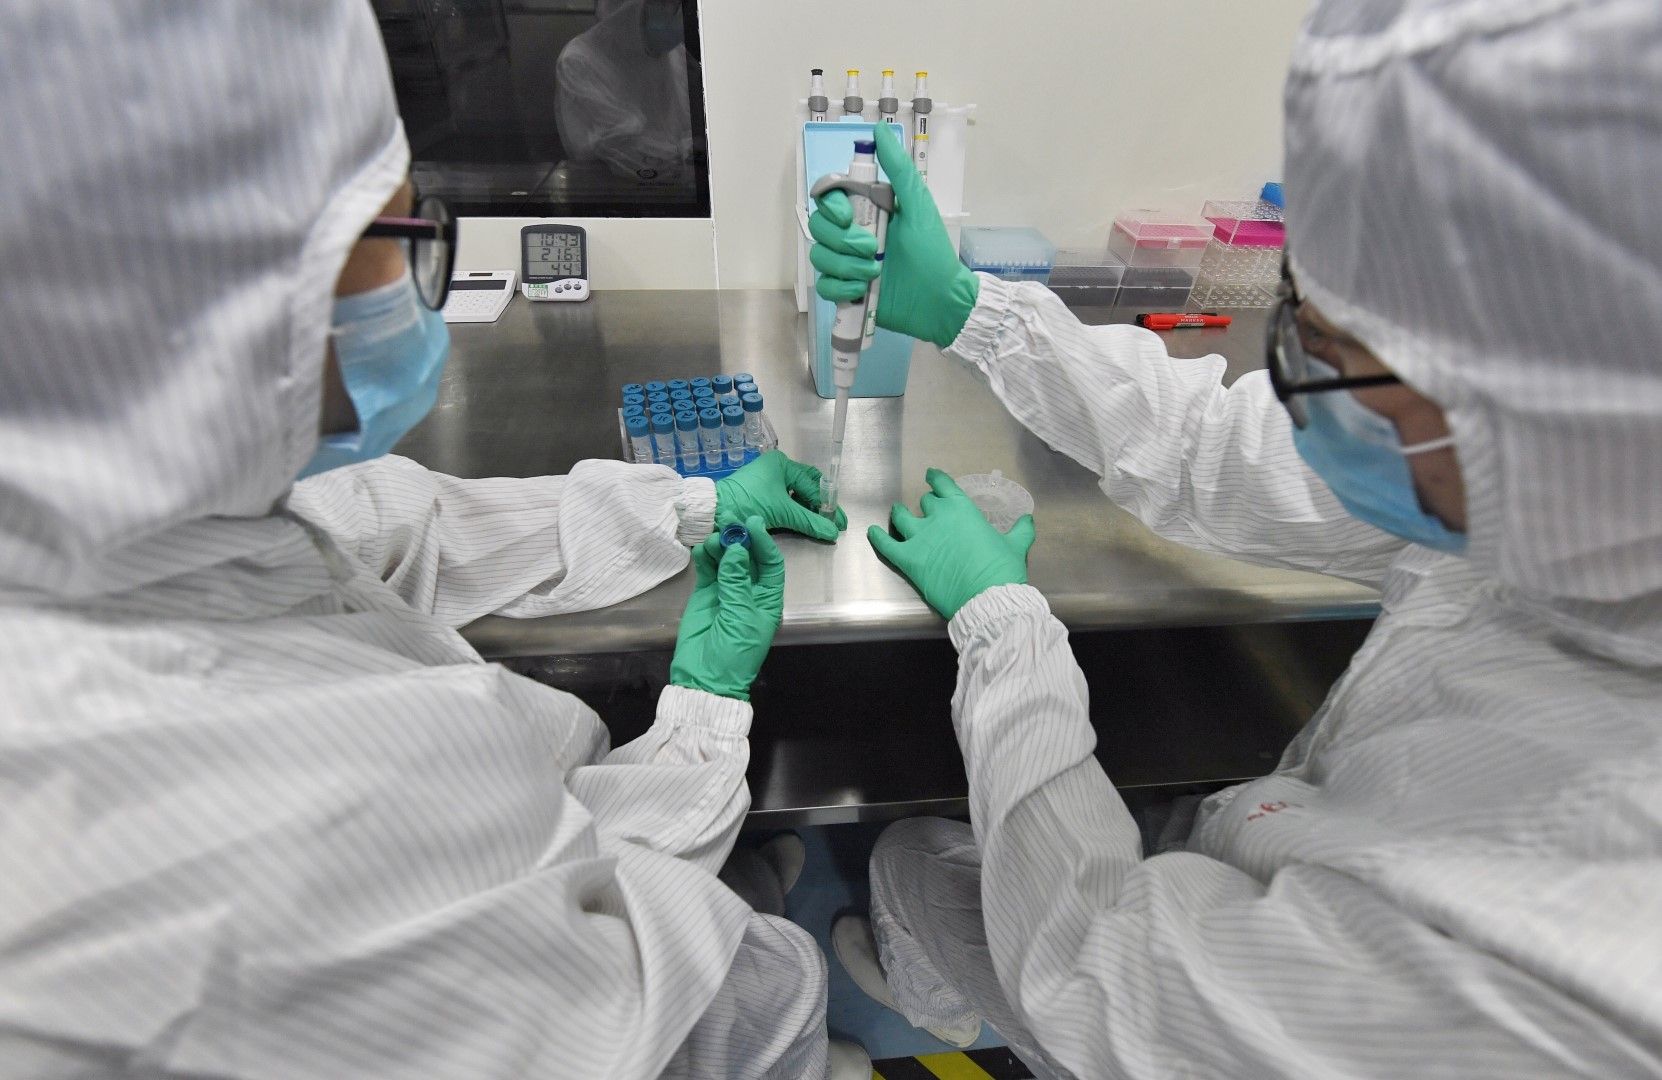 България взима необходимите мерки срещу разпространение на вируса у нас, каза по-рано здравният министър Кирил Ананиев. На снимката: Китайски специализиран екип от биотехнологична компания прави тестове за разграничение на 6 респираторни вируса, сред тях 